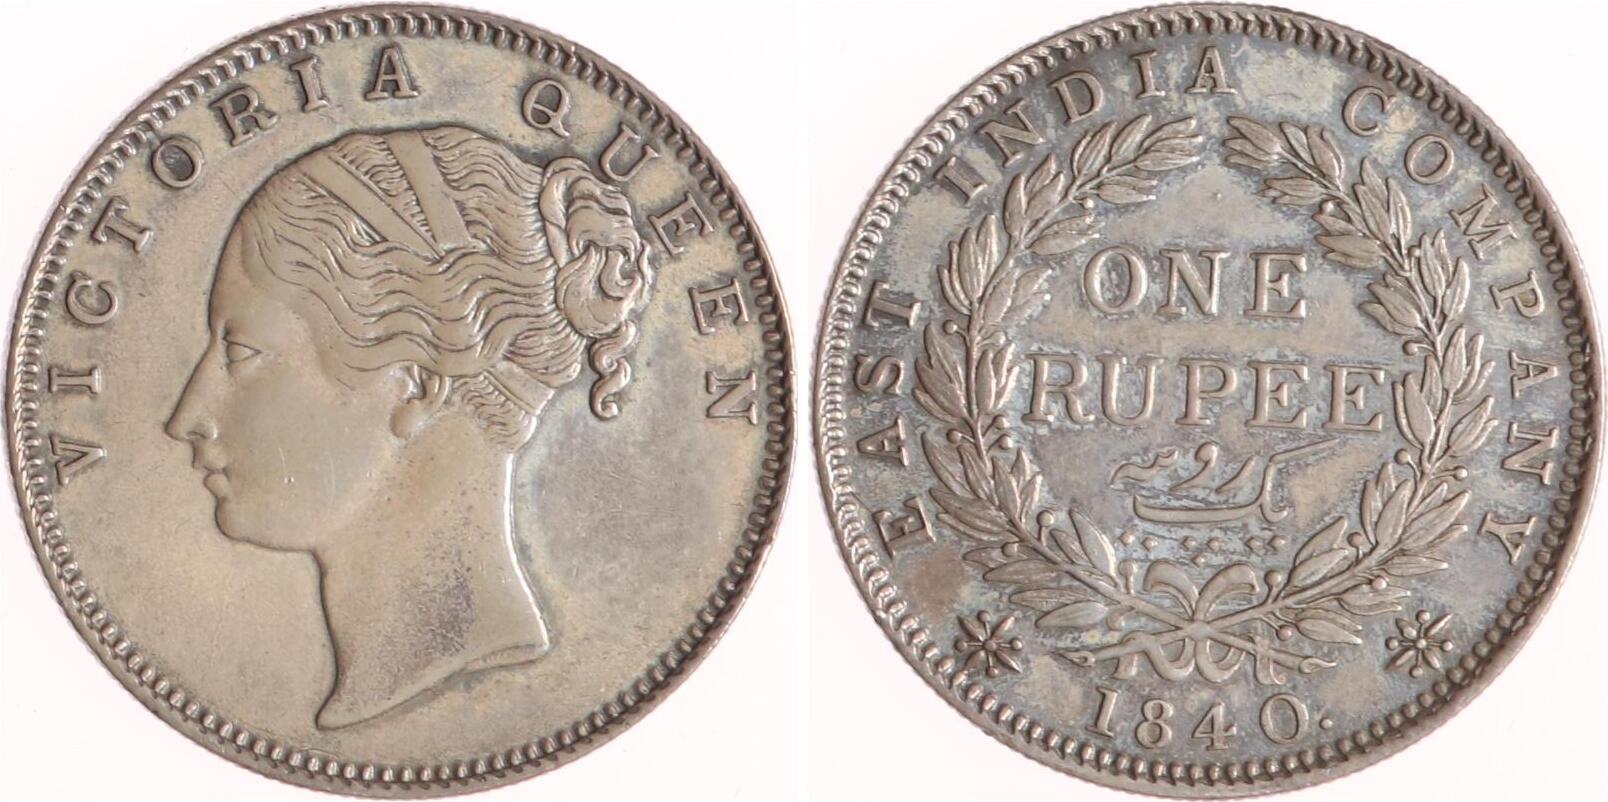 Затылок монеты. Талер 1862. Российская Империя монеты с 1867 по 1916. Besemann, Adolf; 1806-1867).